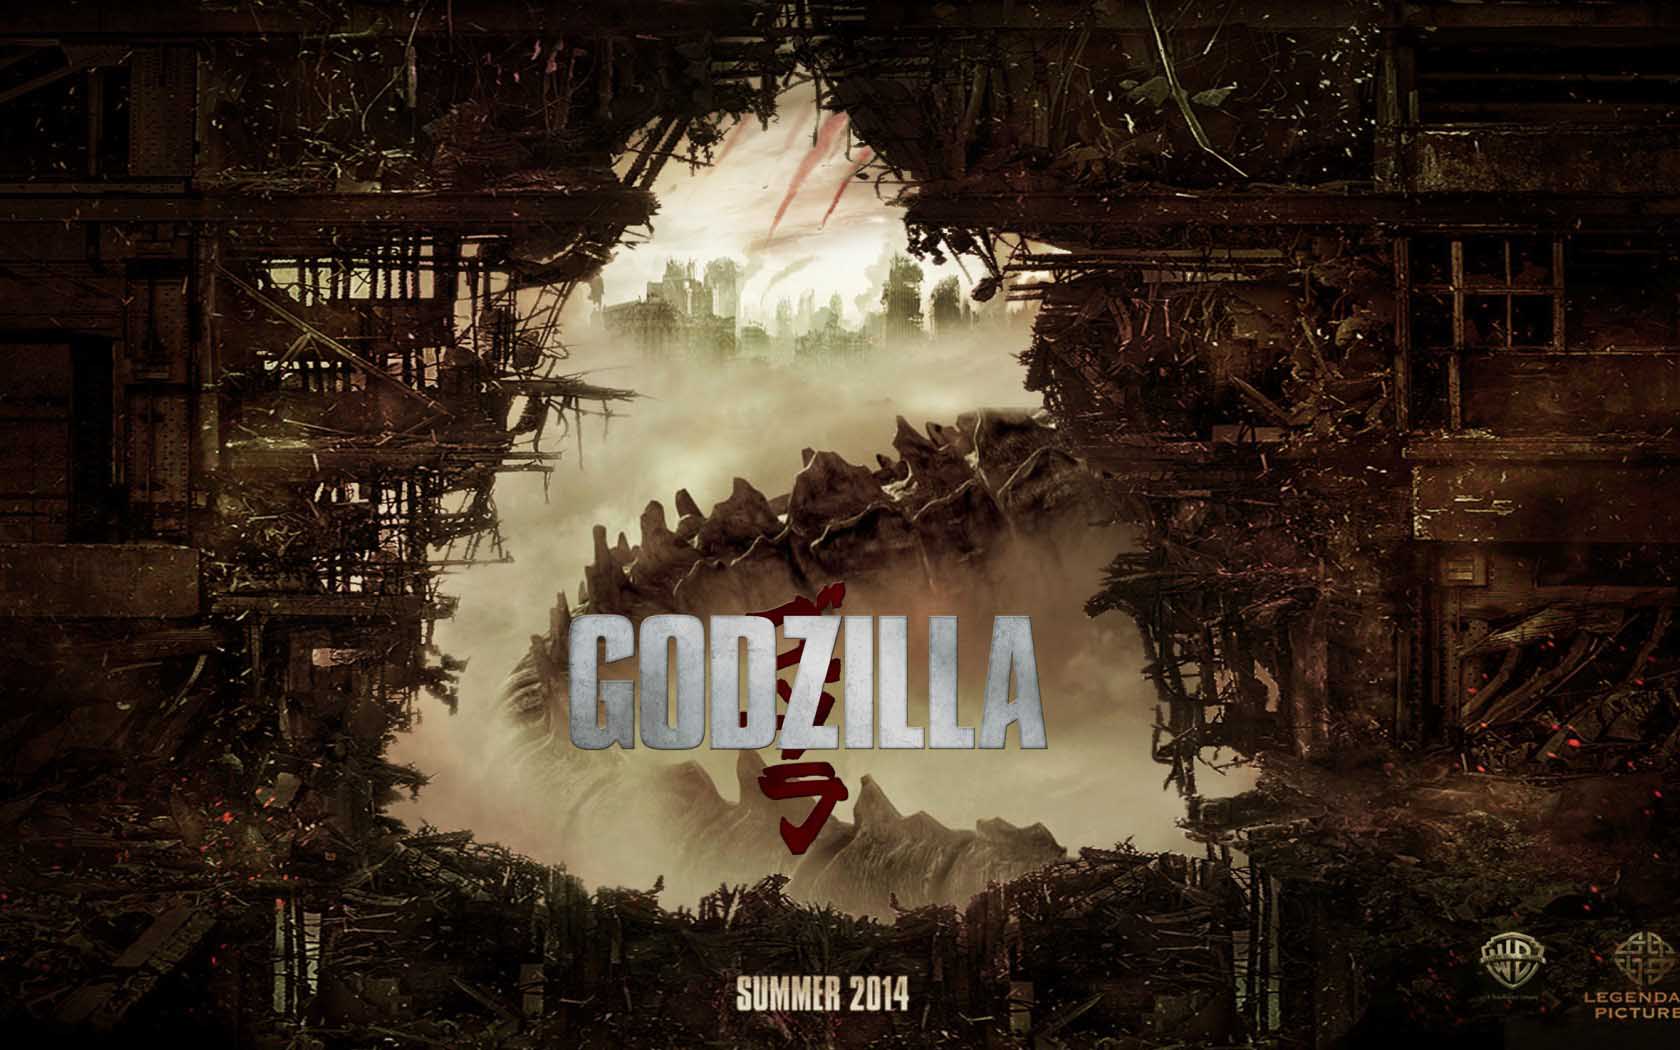 Godzilla monstruosamente con ms pena que gloria